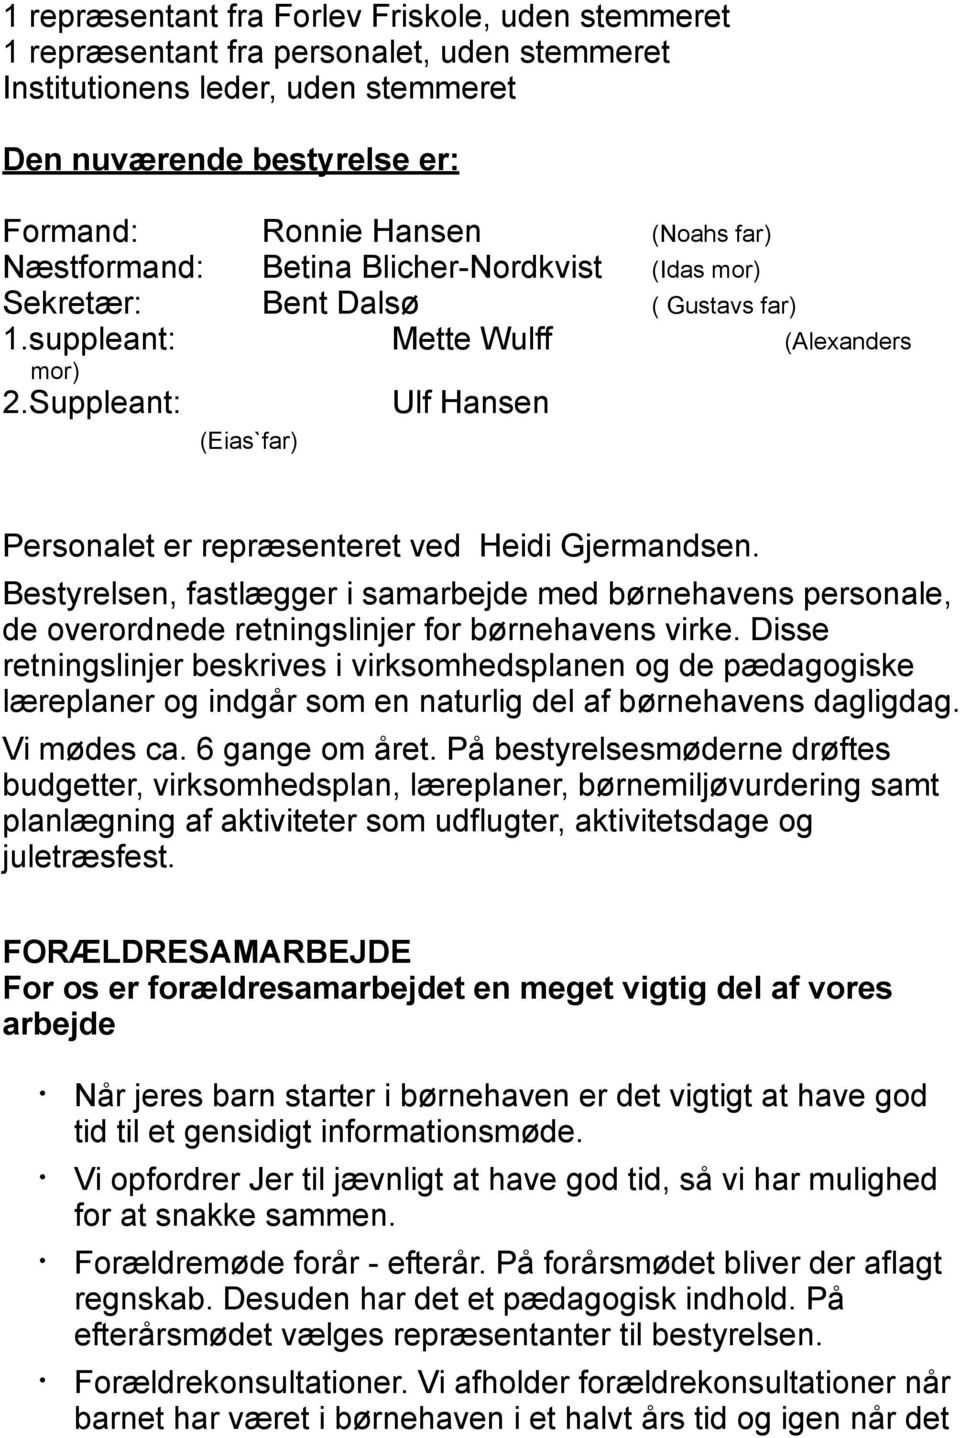 Suppleant: Ulf Hansen (Eias`far) Personalet er repræsenteret ved Heidi Gjermandsen. Bestyrelsen, fastlægger i samarbejde med børnehavens personale, de overordnede retningslinjer for børnehavens virke.